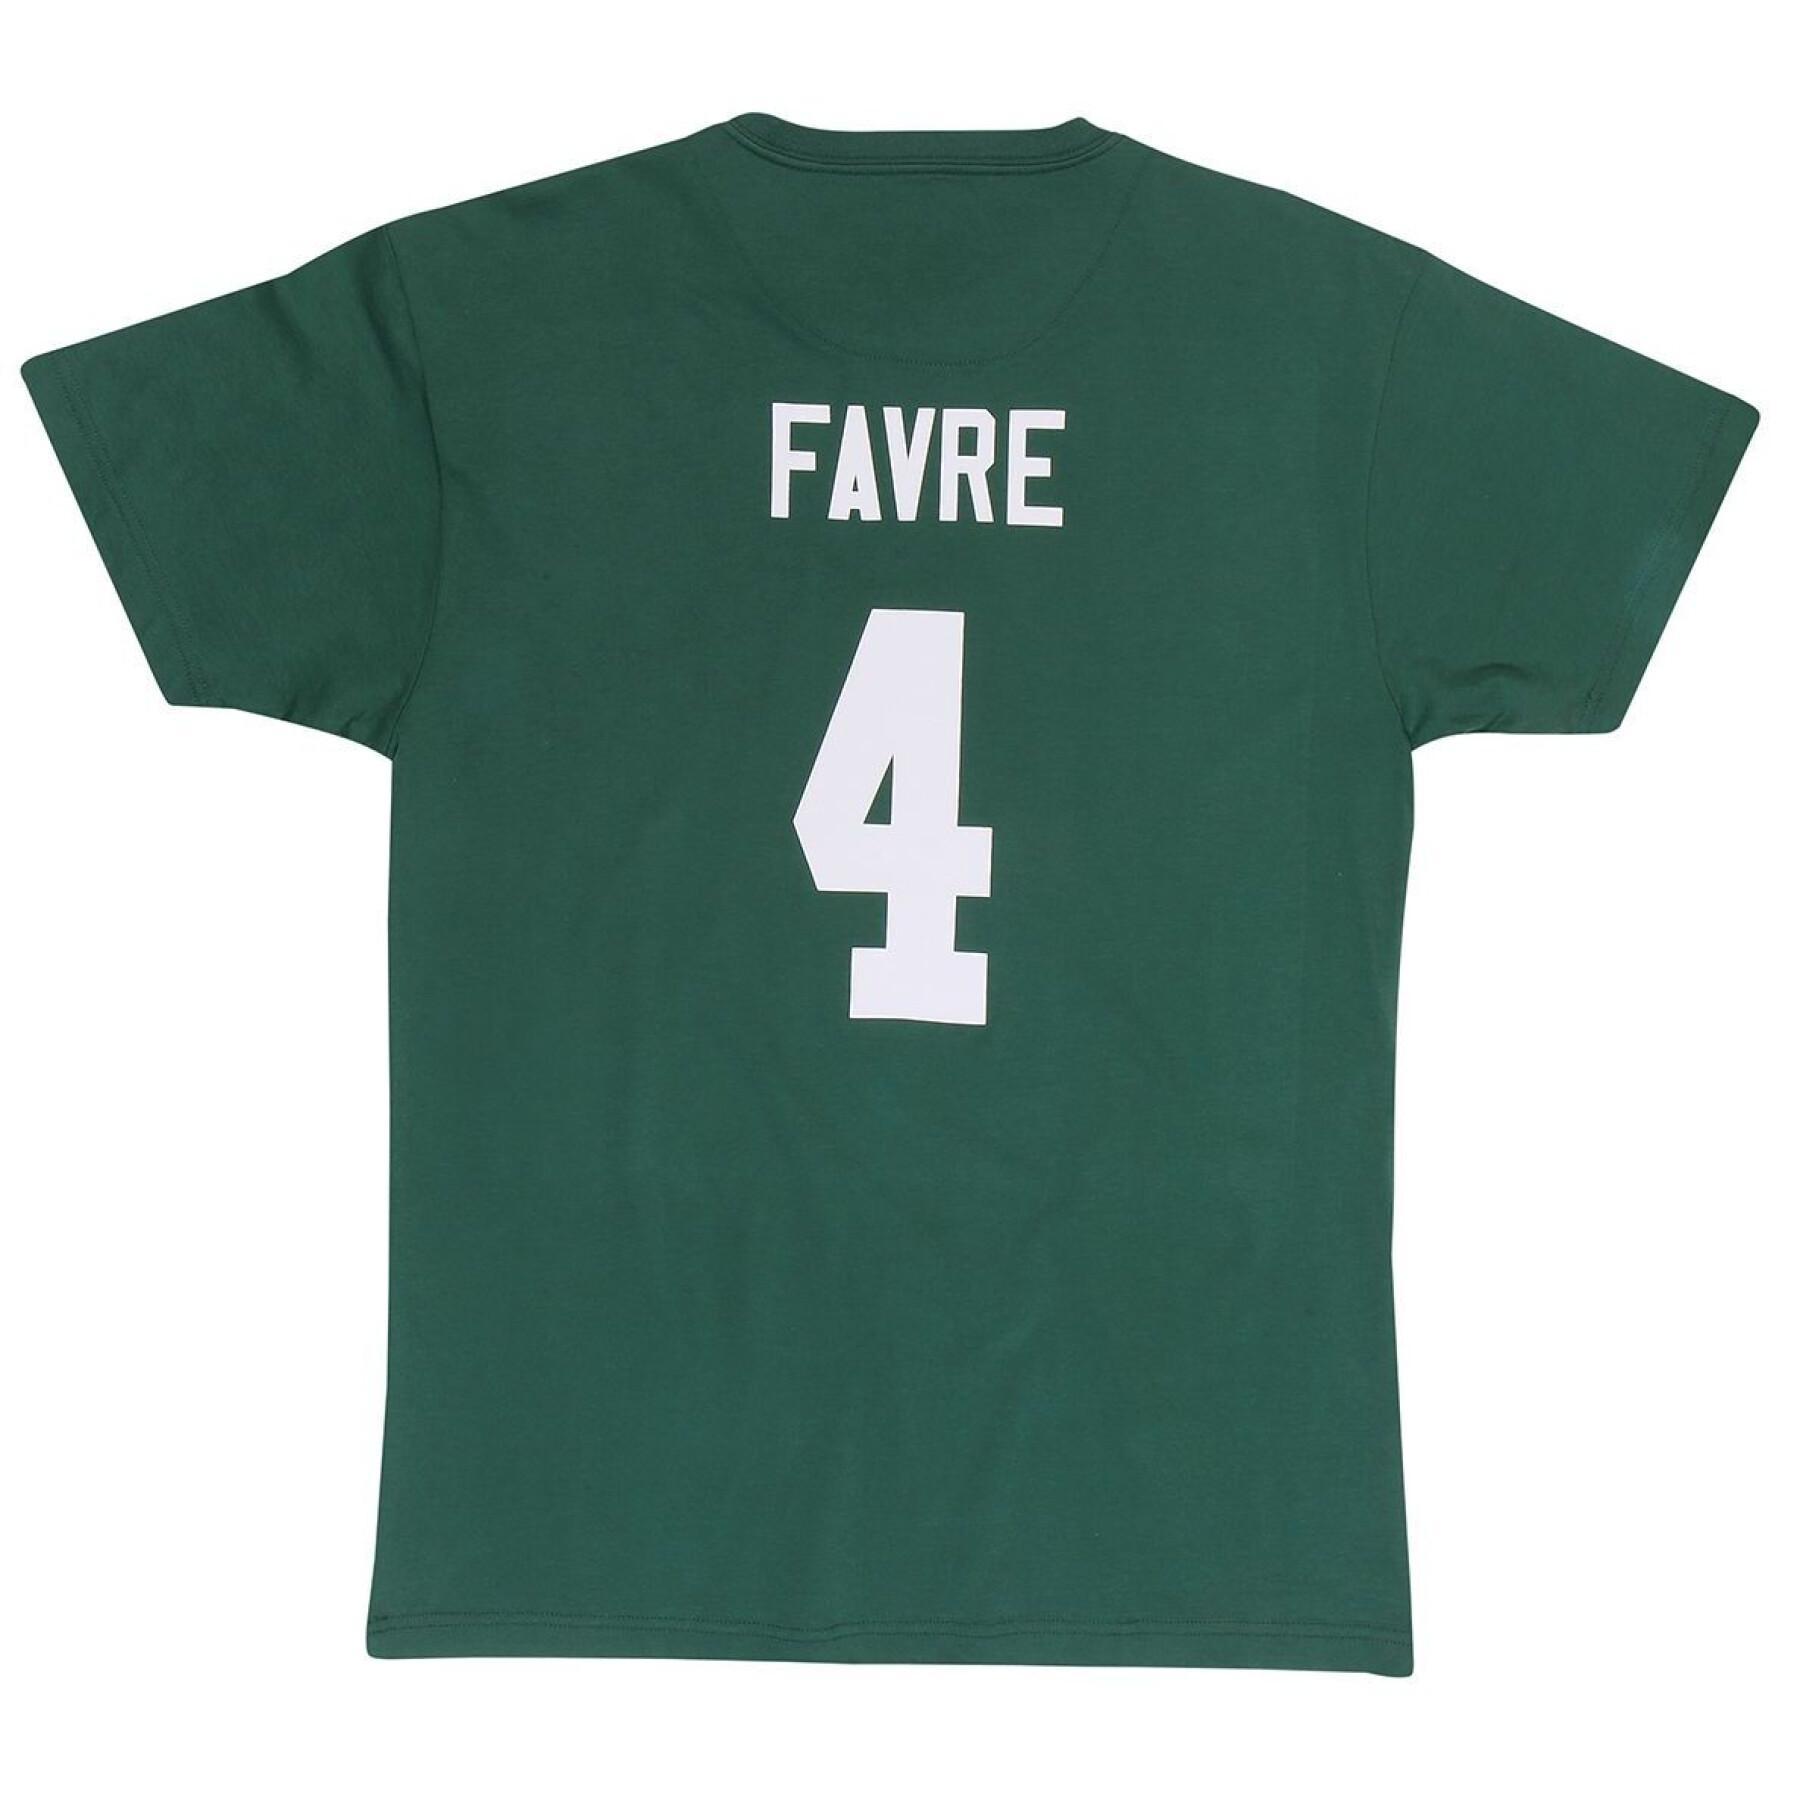 T-shirt Green Bay Packers Brett Favre